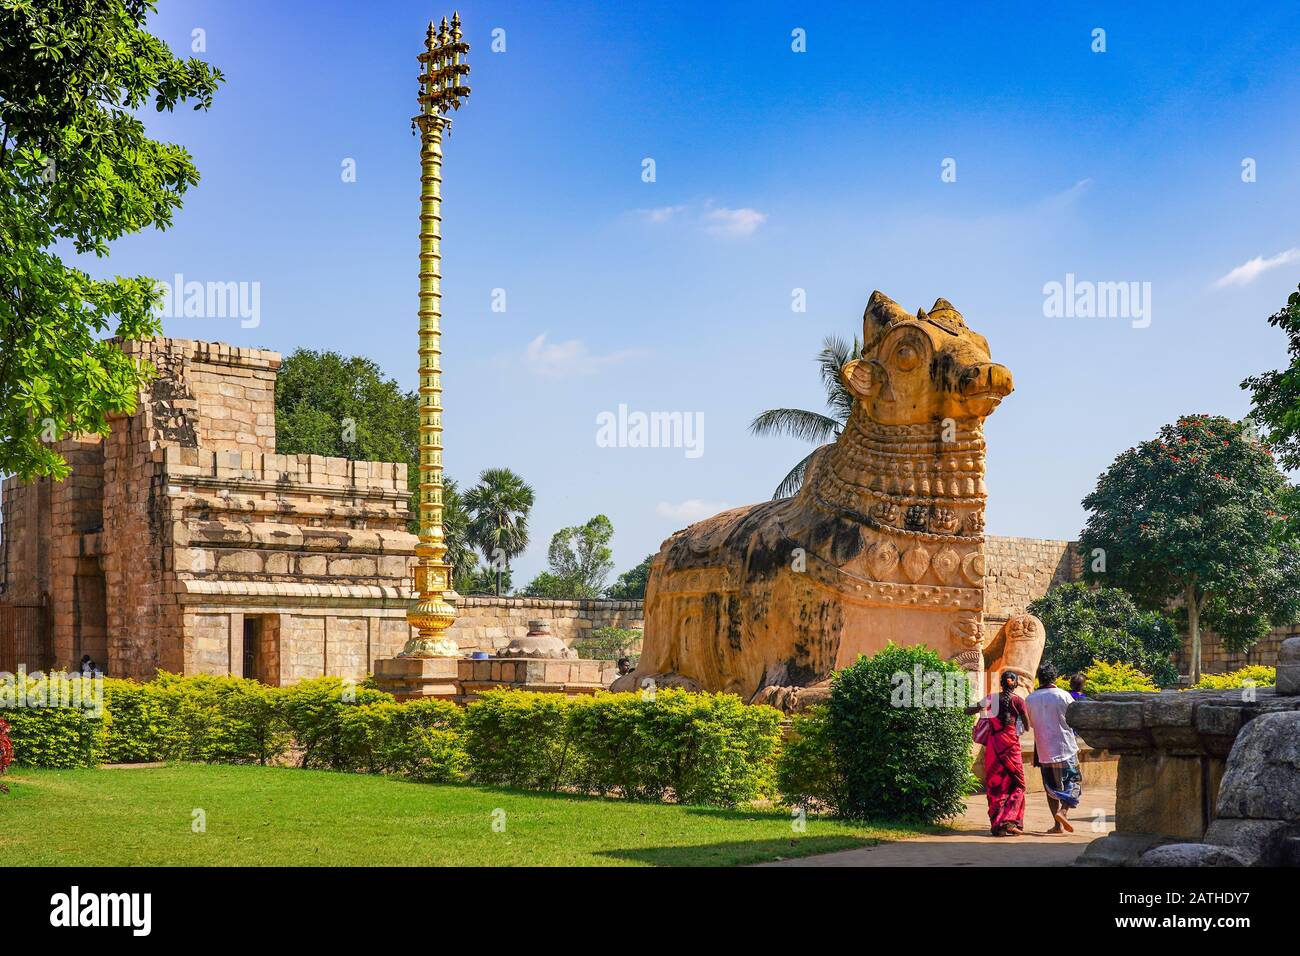 Der Gangaikondacholapuram-Tempel, ein UNESCO-Weltkulturerbe, Komplex des Chola-Imperiums in der Nähe von Tanjore in Tamil Nadu. Aus einer Reihe von Reisefotos Stockfoto